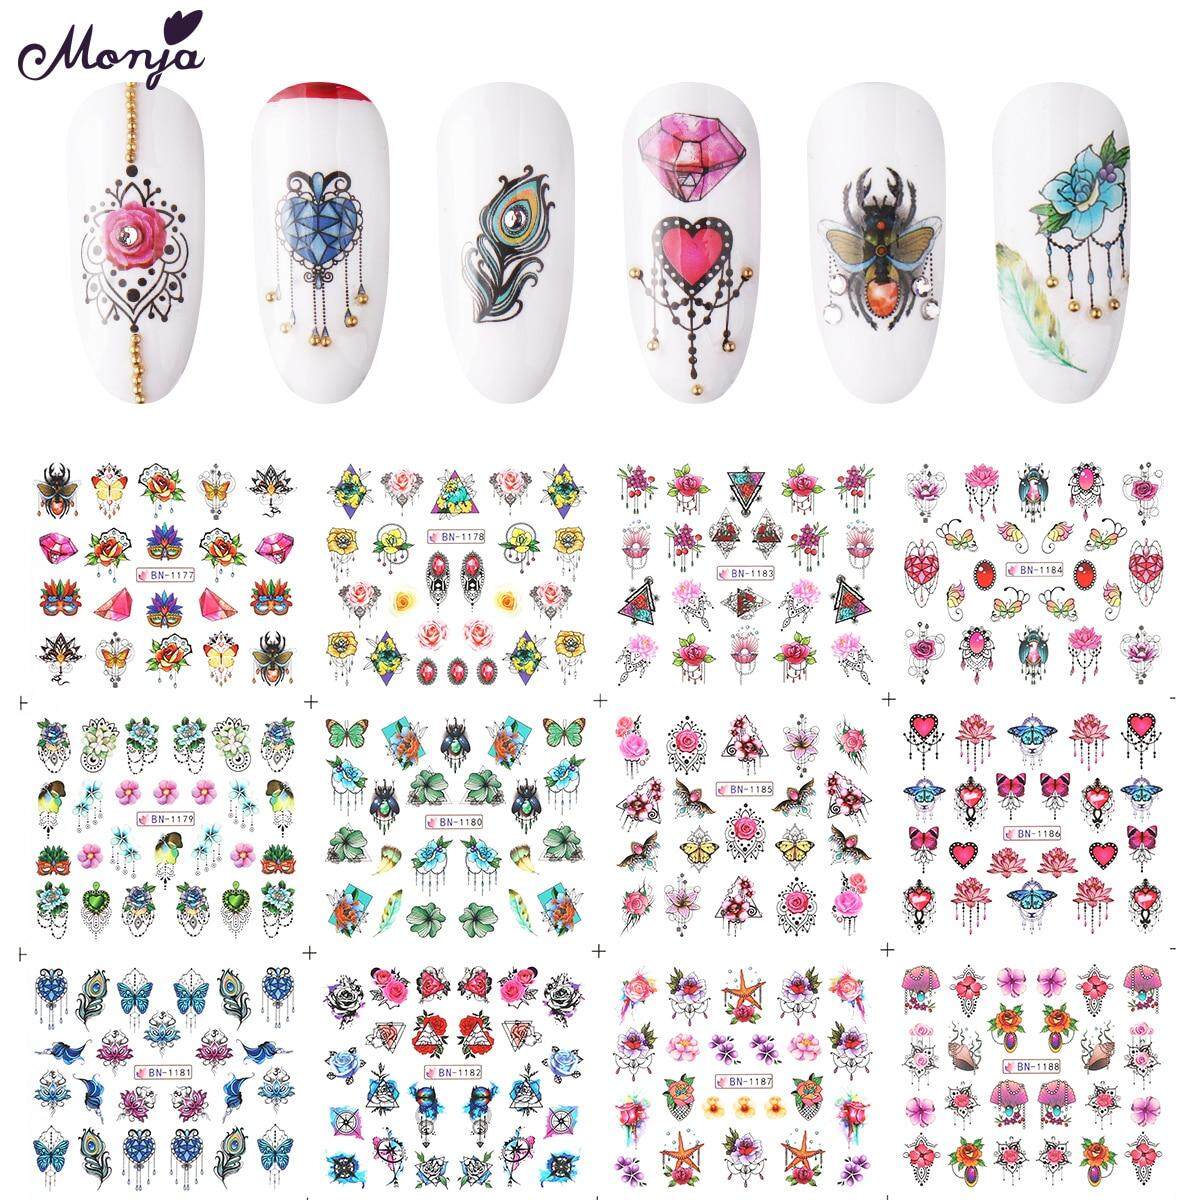 Hình ảnh 12 Tấm Nail Art Jewelry Bướm Loạt Chuyển Nước Sticker Flowers Pattern Watermark Nail Decals Trang Trí Làm Móng Tay